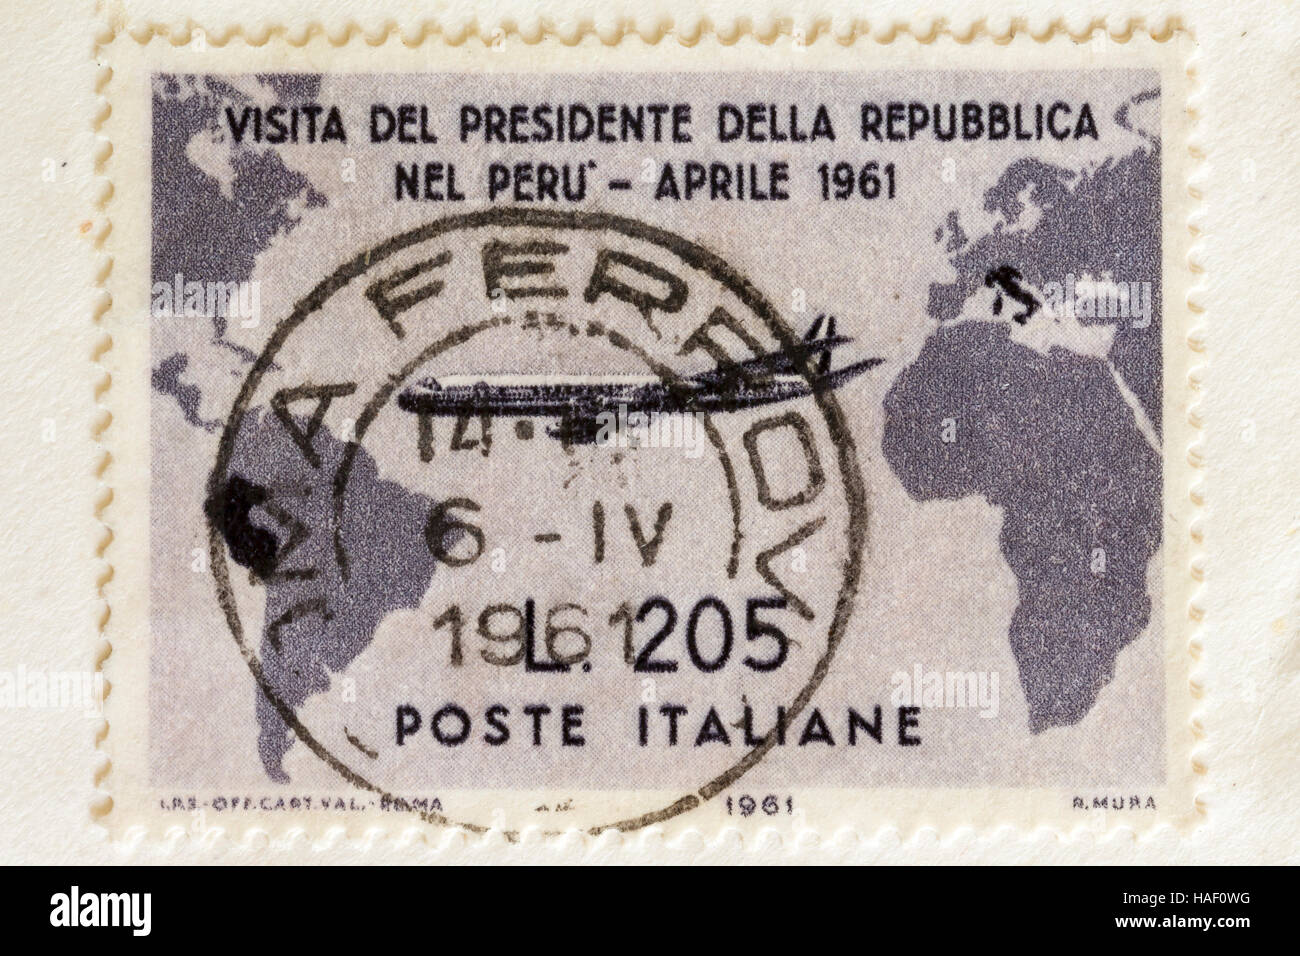 Biella, Italia - 26 de noviembre de 2016 sellos raros describiendo la visita del presidente gronchi en Perú en abril de 1961 Foto de stock